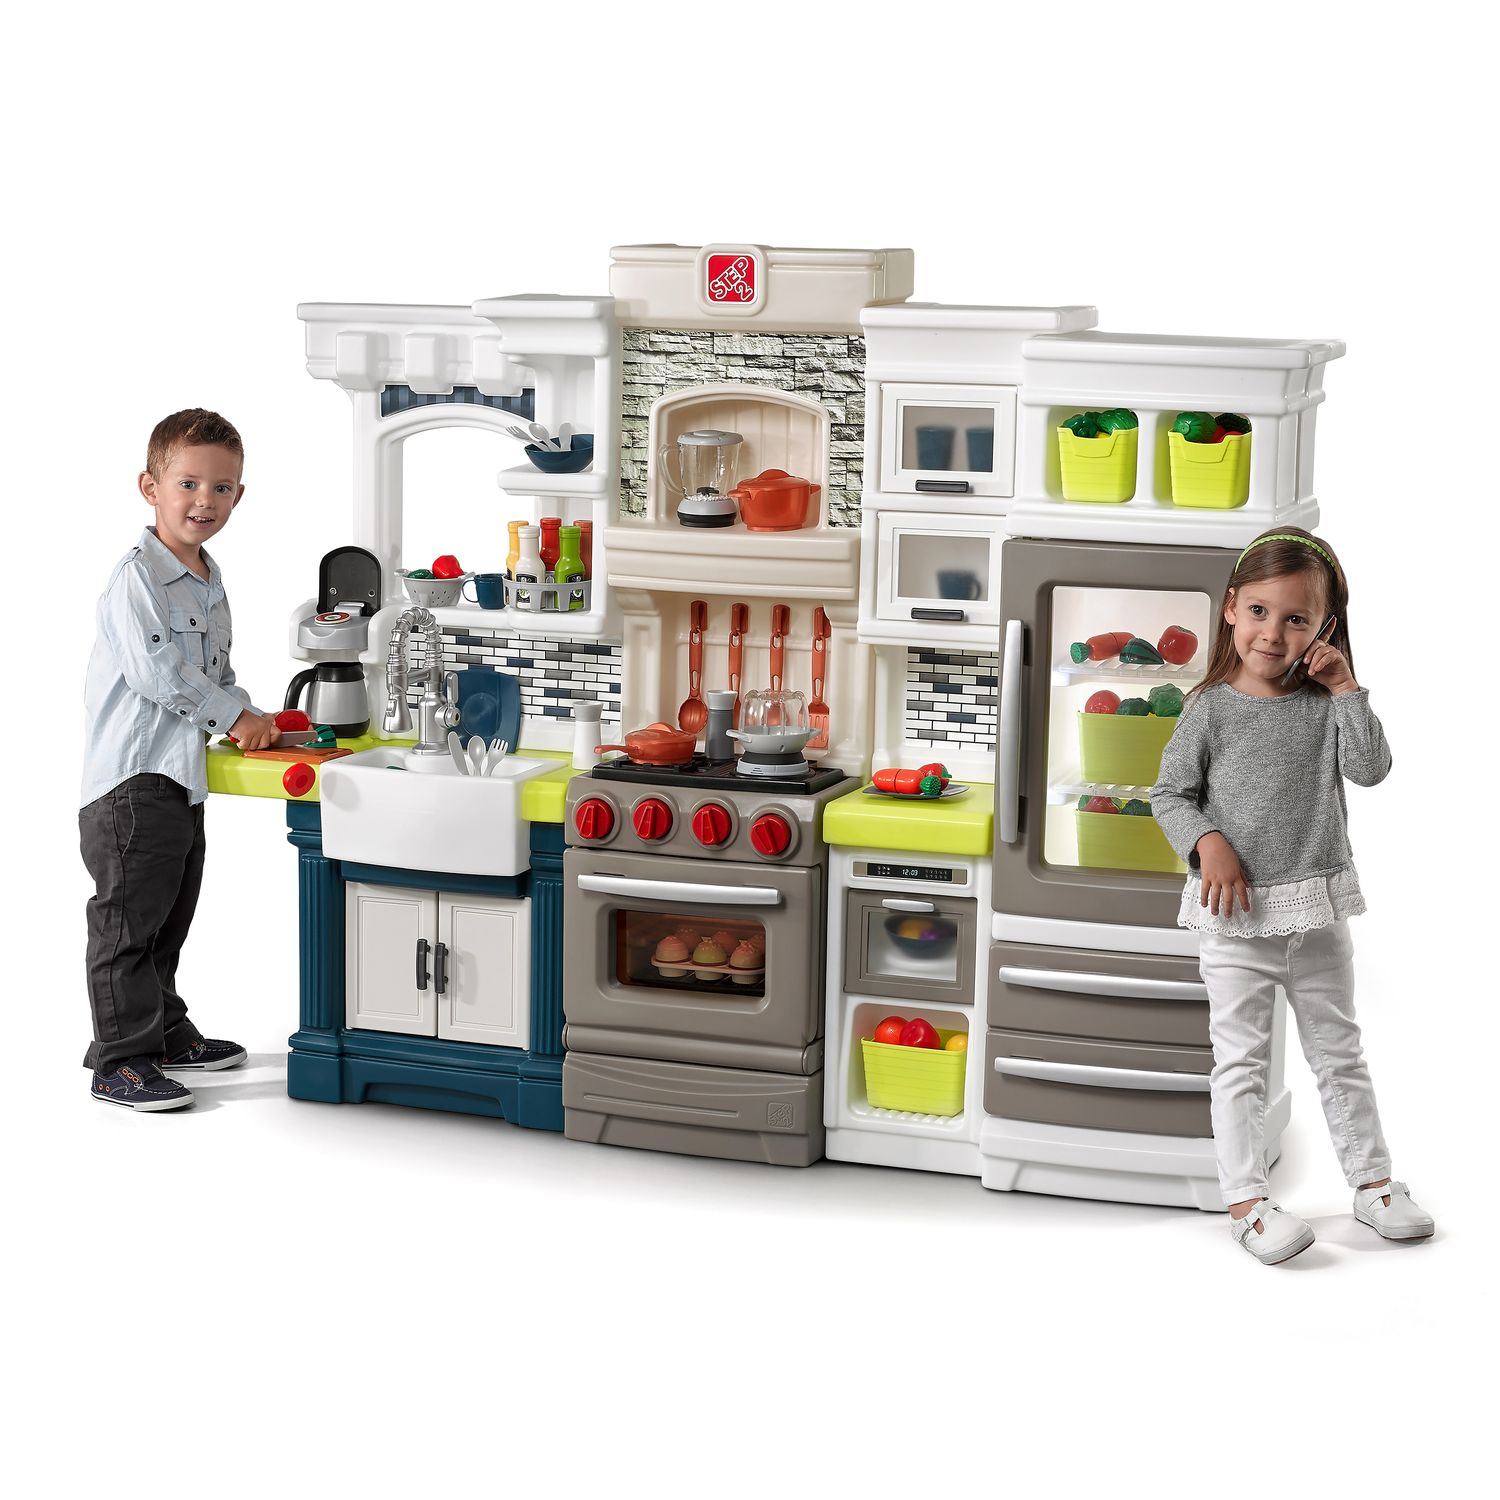 kohl's children's kitchen set